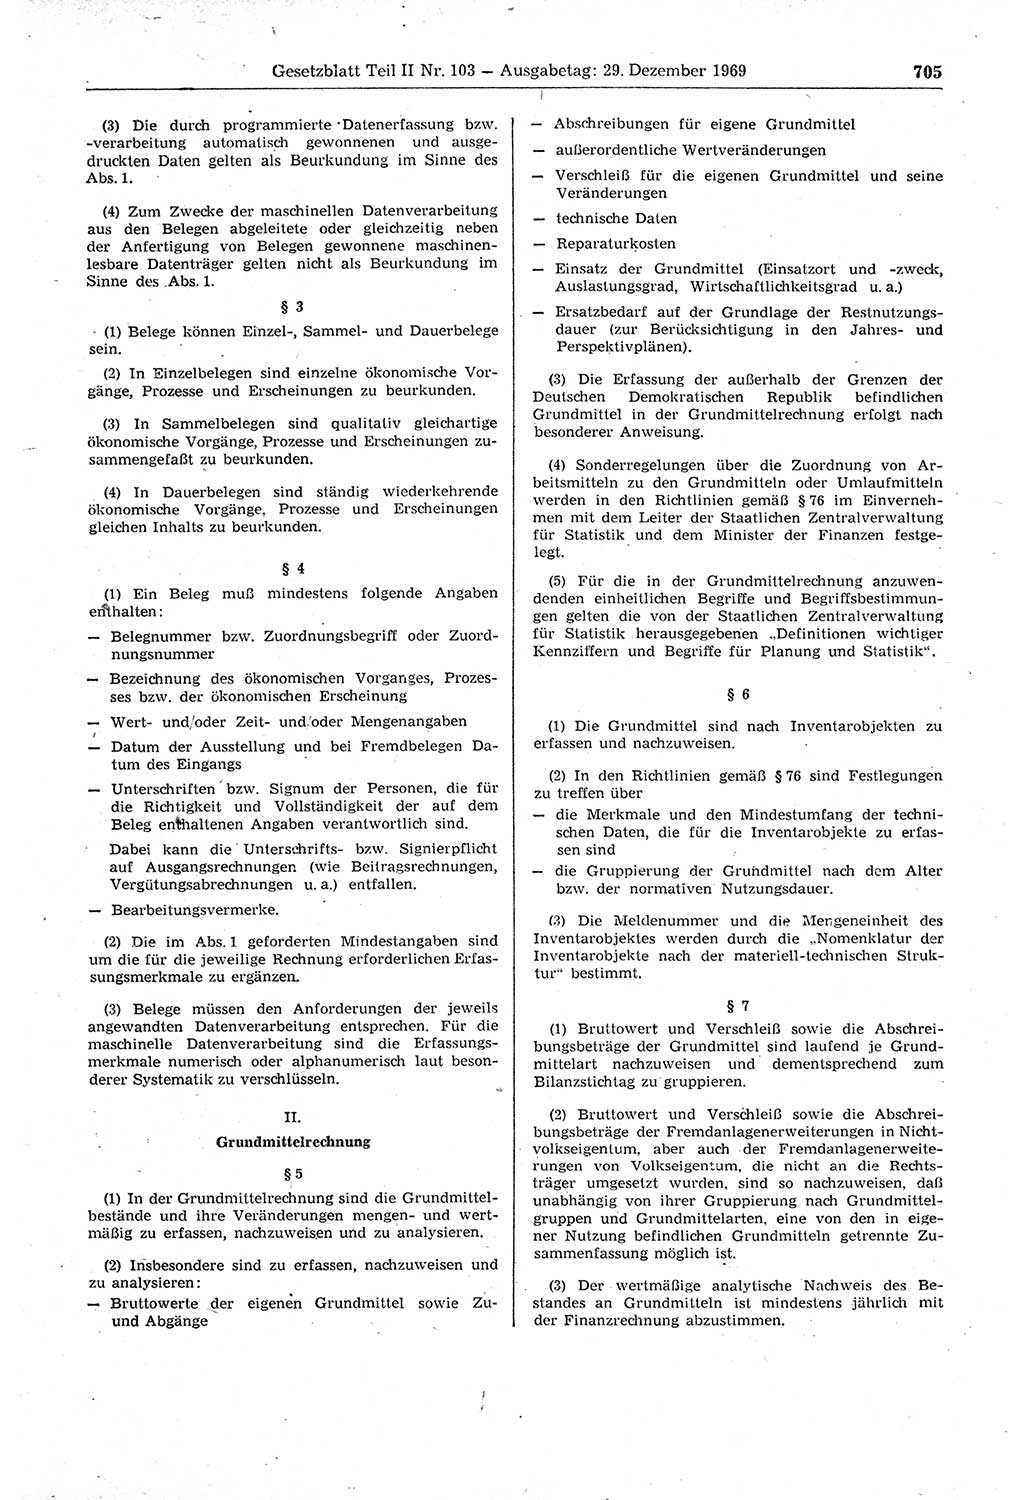 Gesetzblatt (GBl.) der Deutschen Demokratischen Republik (DDR) Teil ⅠⅠ 1969, Seite 705 (GBl. DDR ⅠⅠ 1969, S. 705)